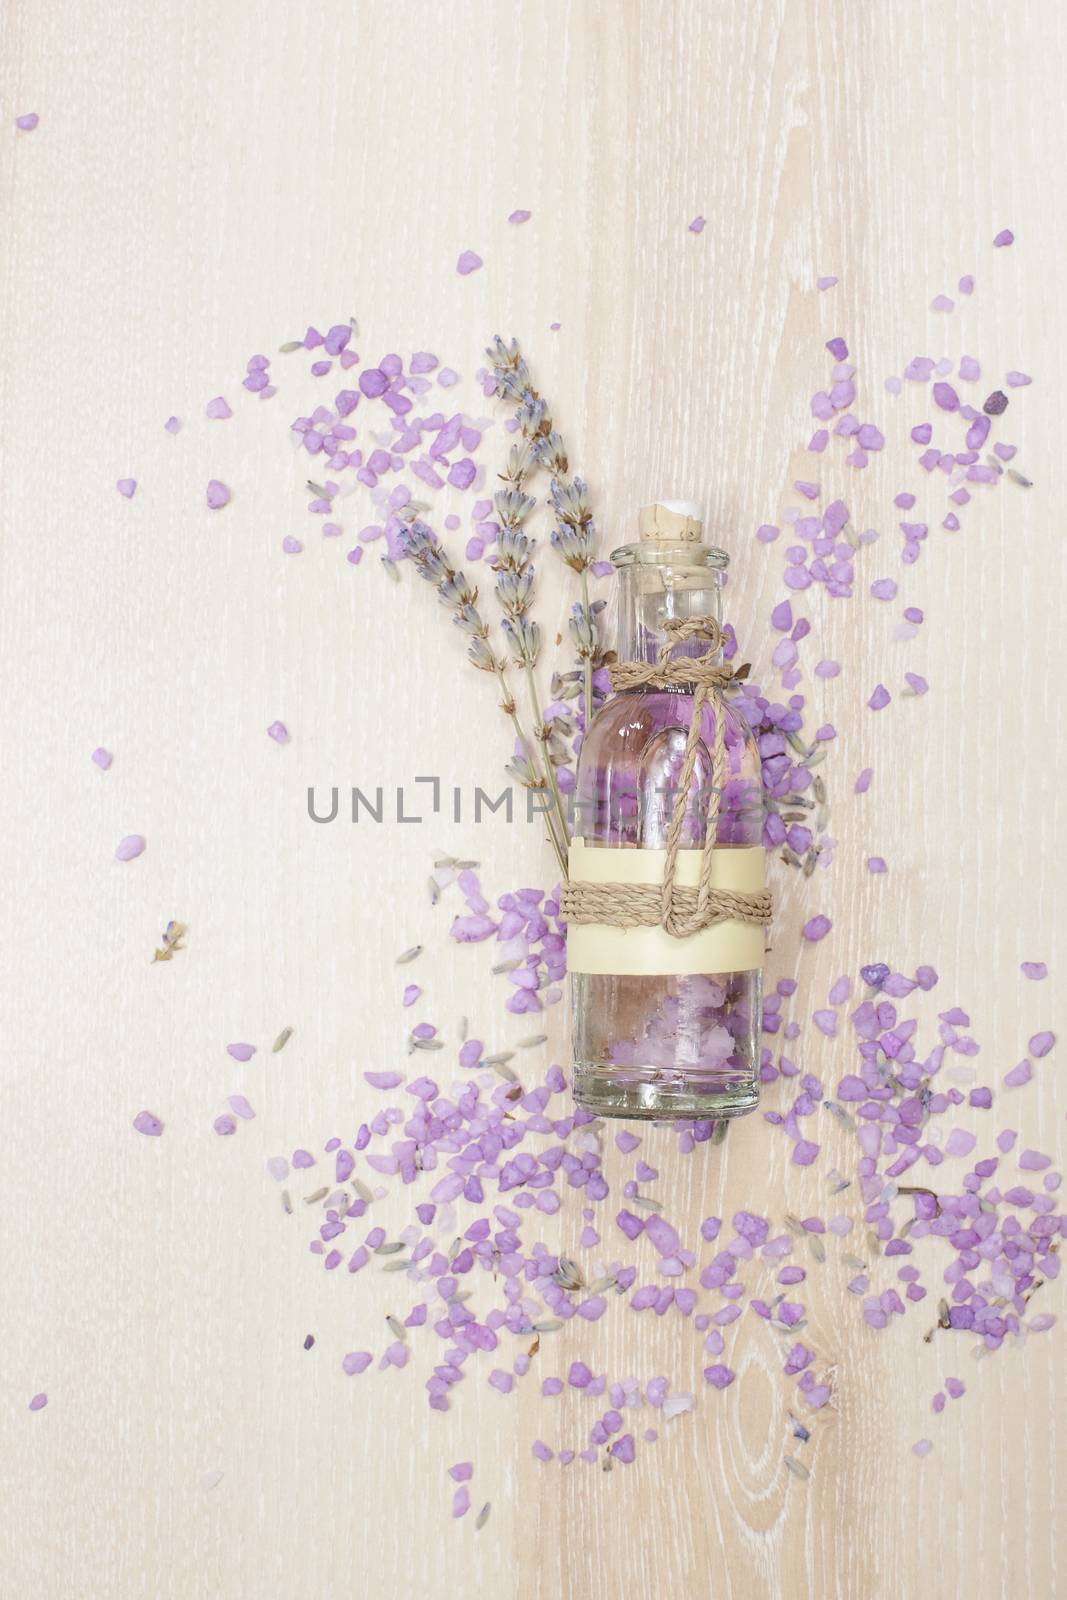 Lavender oil in a glass bottle by Slast20